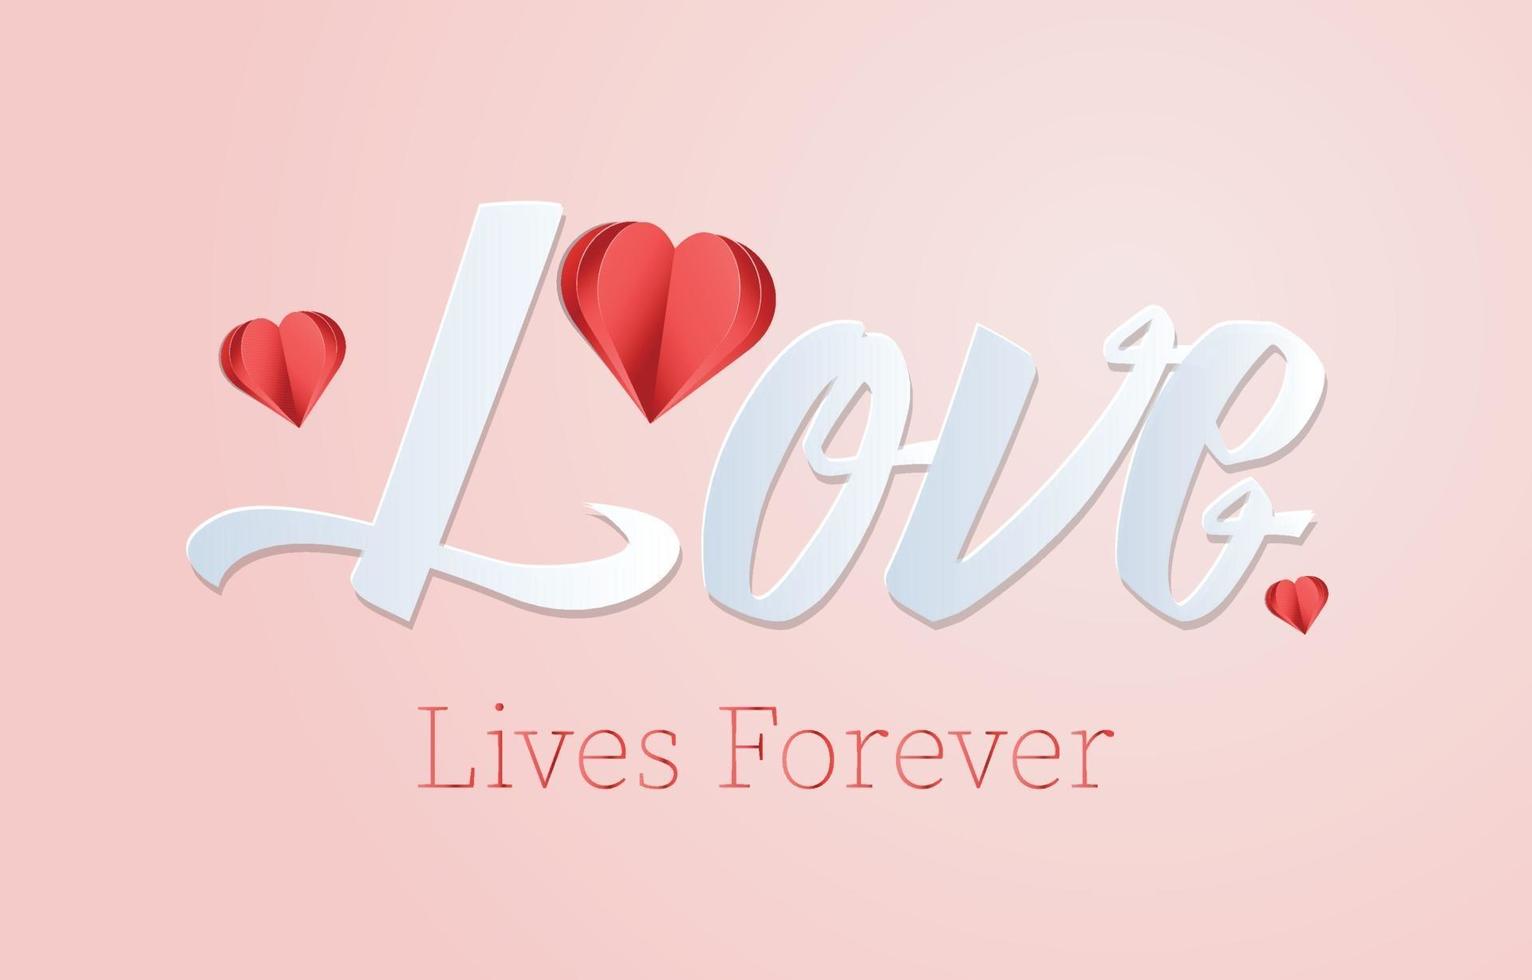 love lives forever Valentine's poster vector